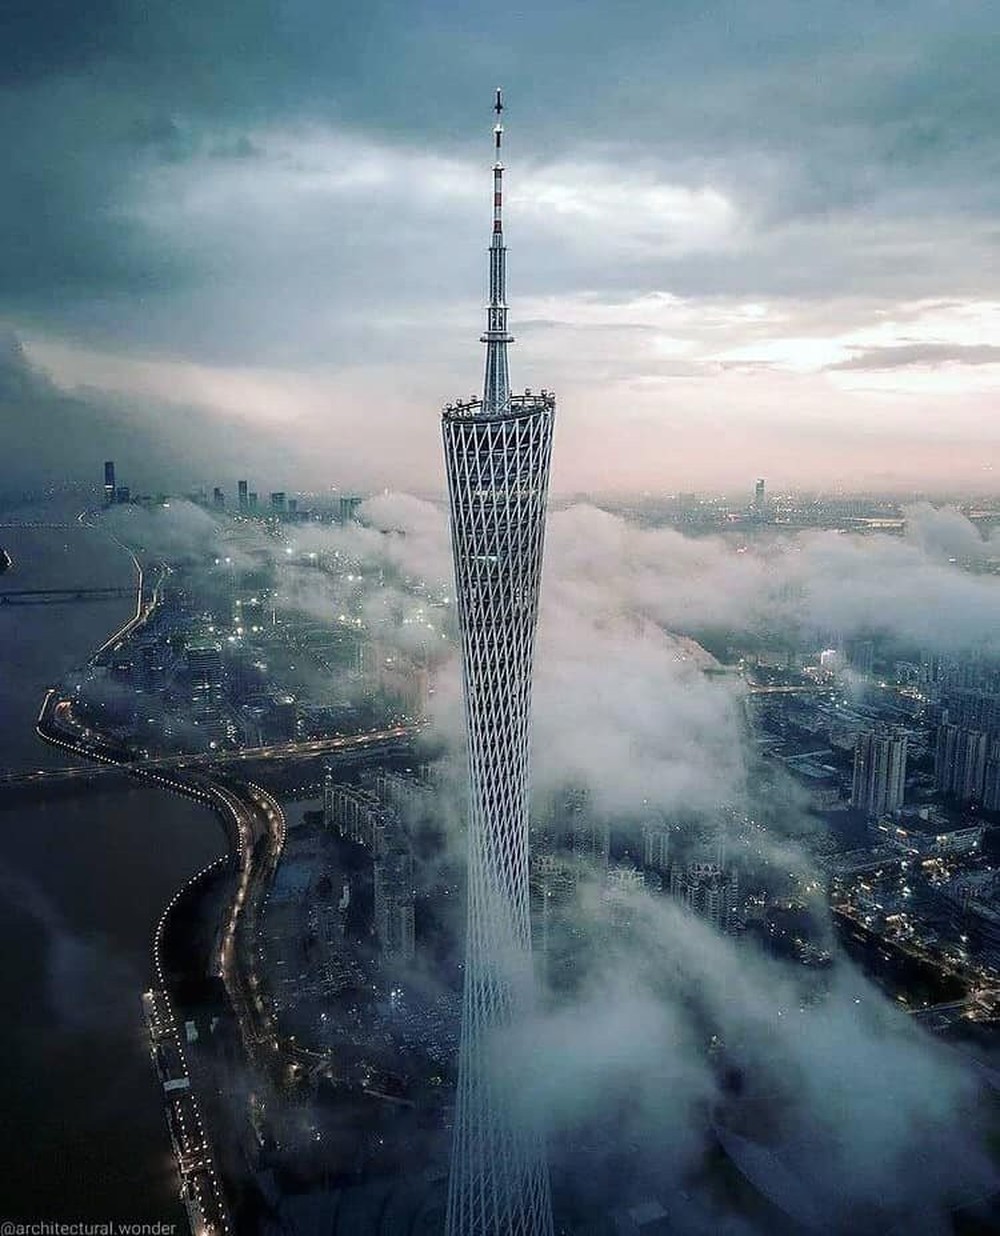 Tòa nhà chọc trời được ví như siêu mẫu của Trung Quốc: Chiều cao và độ chịu chi đều hàng khủng, ngỡ ngàng nhất là loạt kỷ lục khiến nhiều người khó thở - Ảnh 1.